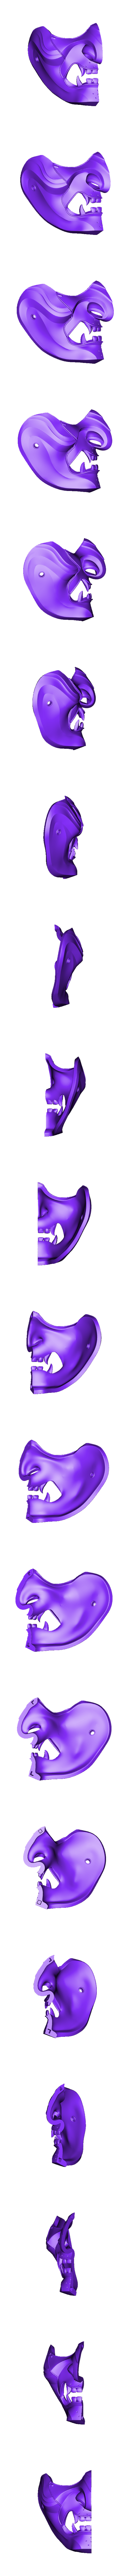 RightSide.obj Descargar archivo OBJ GHOST OF TSUSHIMA - Ghost Mask - Fan art cosplay 3D print • Diseño para imprimir en 3D, 3DCraftsman